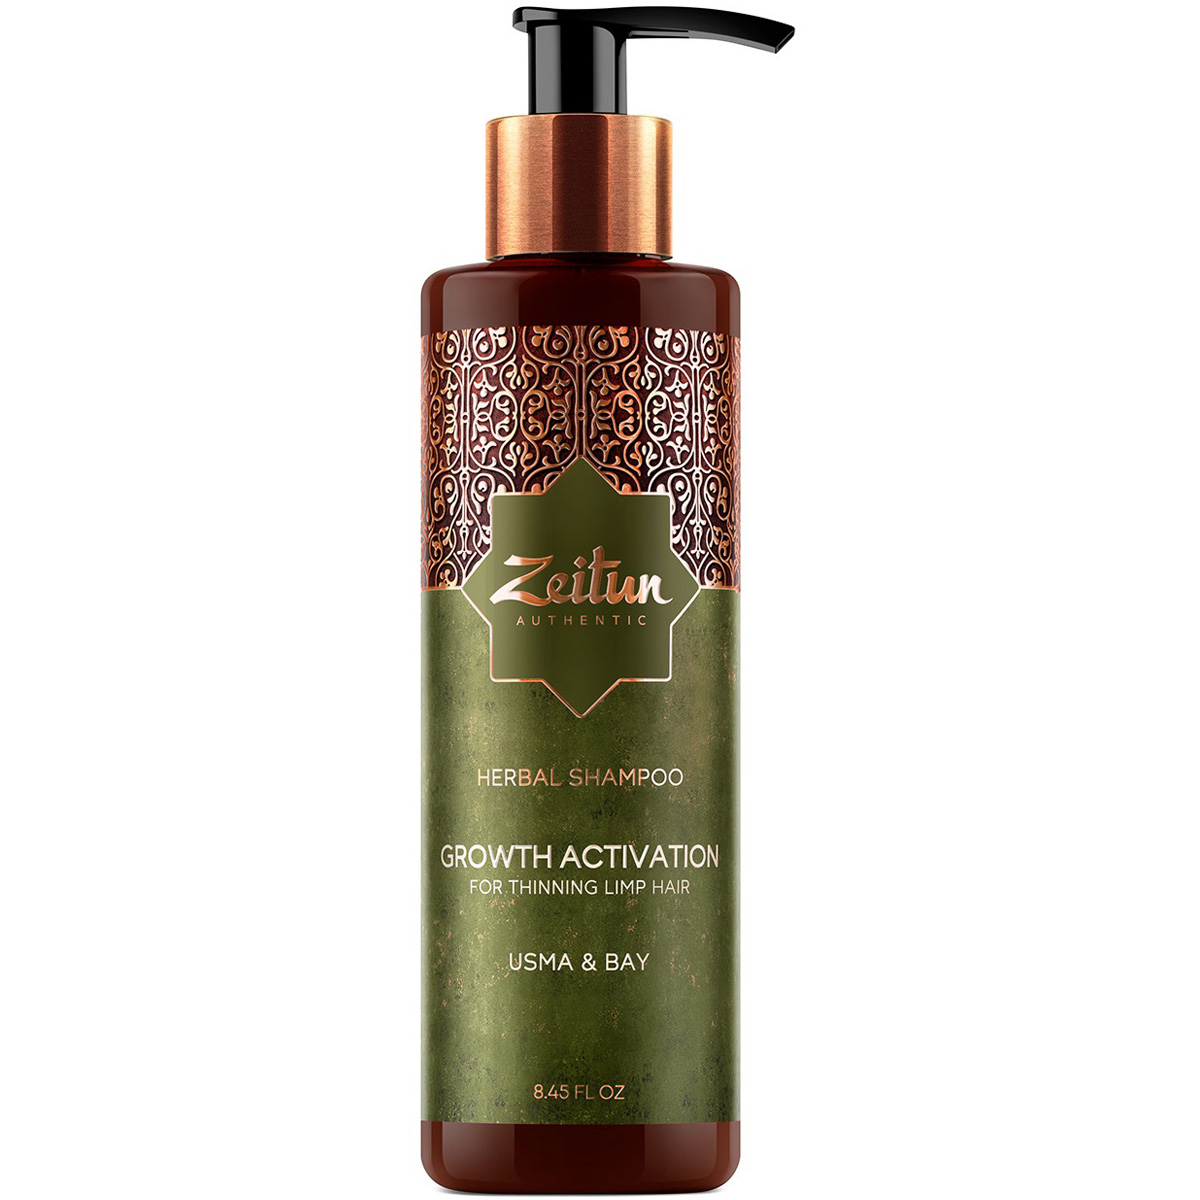 цена Zeitun Фито-шампунь с маслом усьмы для роста волос Growth Activation, 250 мл (Zeitun, Authentic)